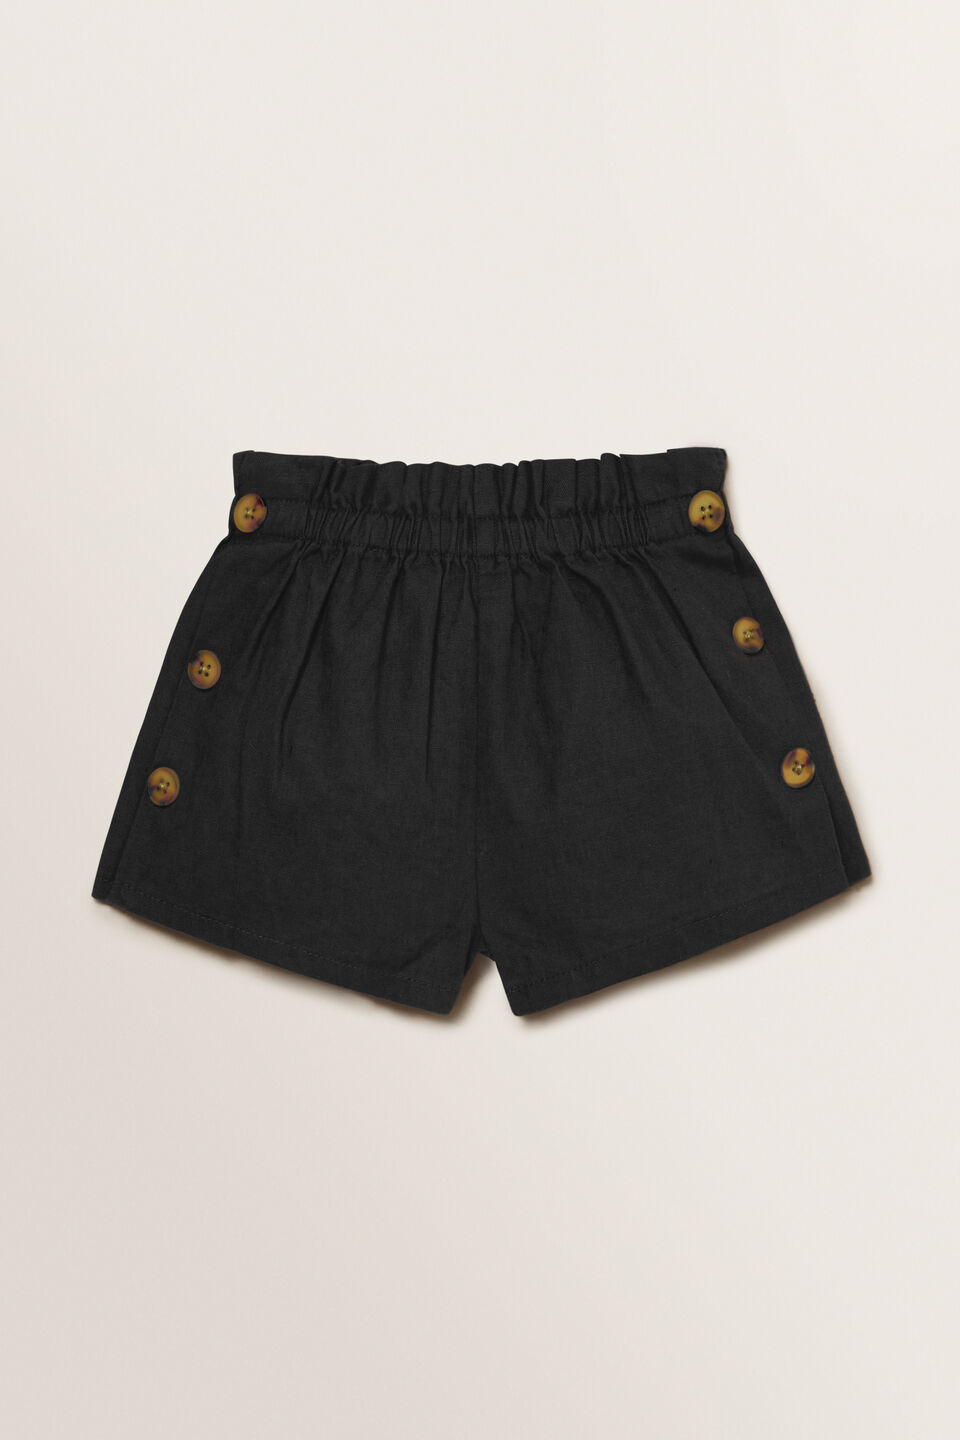 Linen Button Shorts  